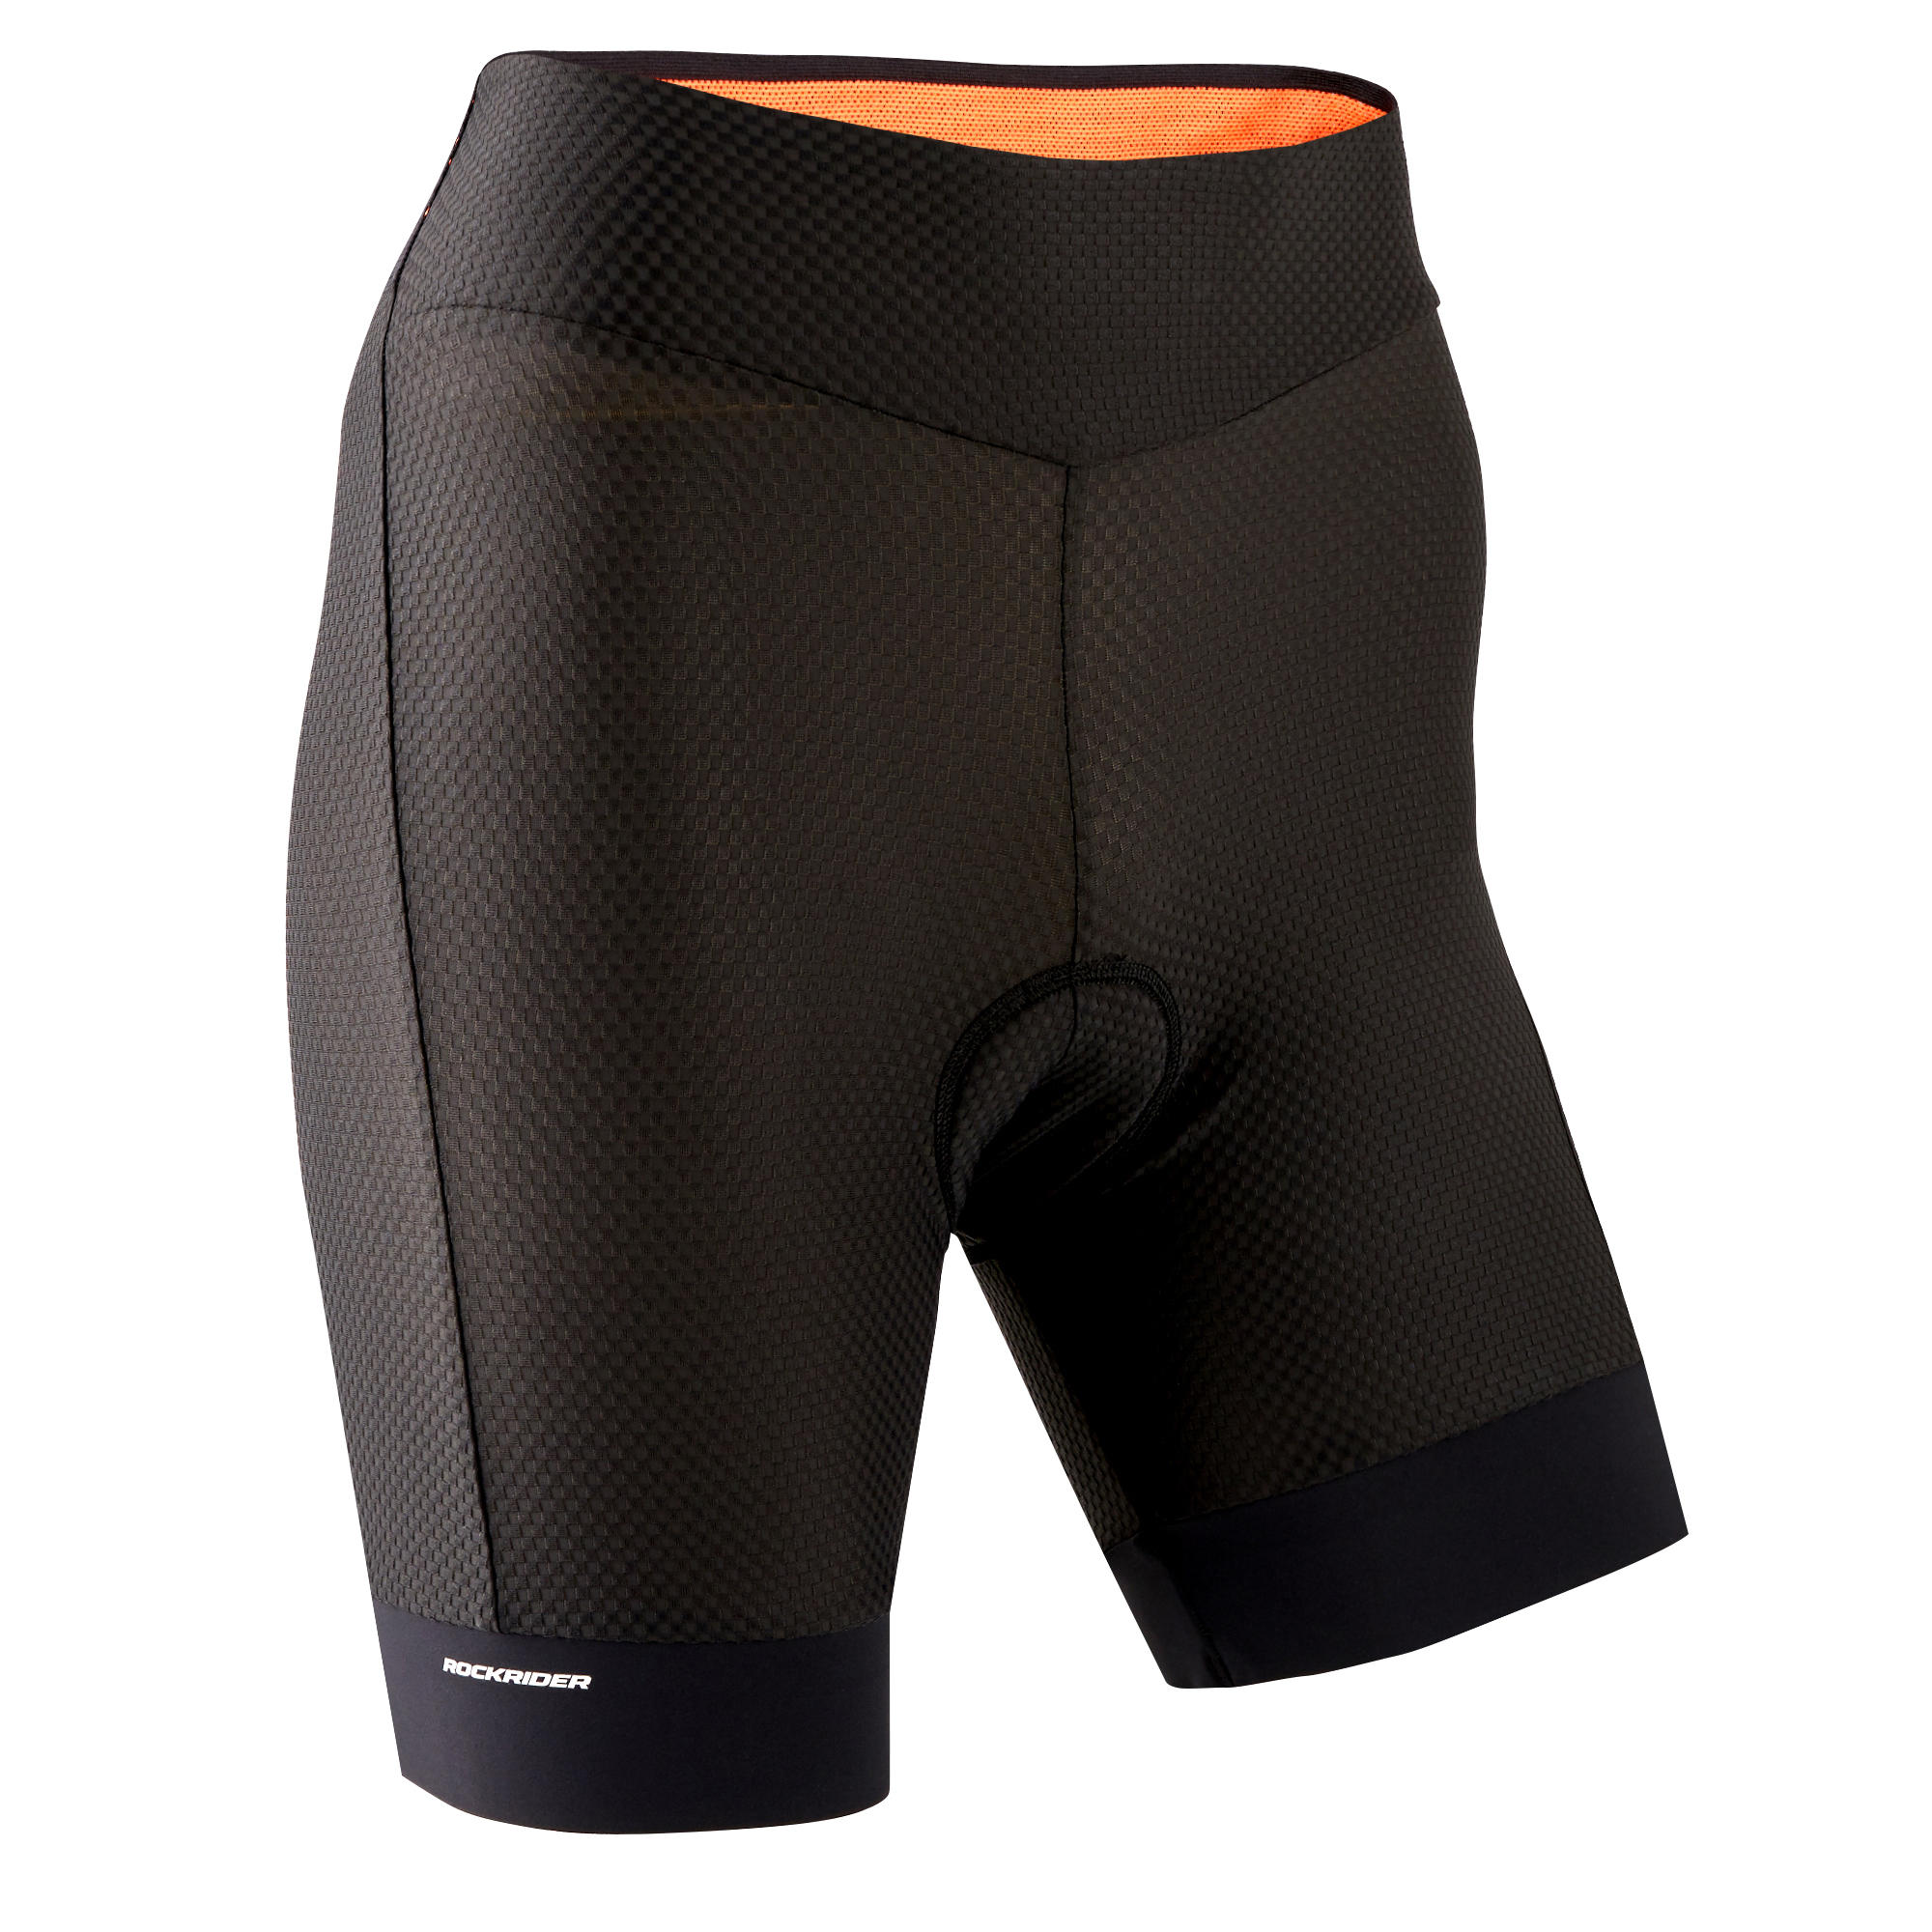 mens padded cycling shorts uk